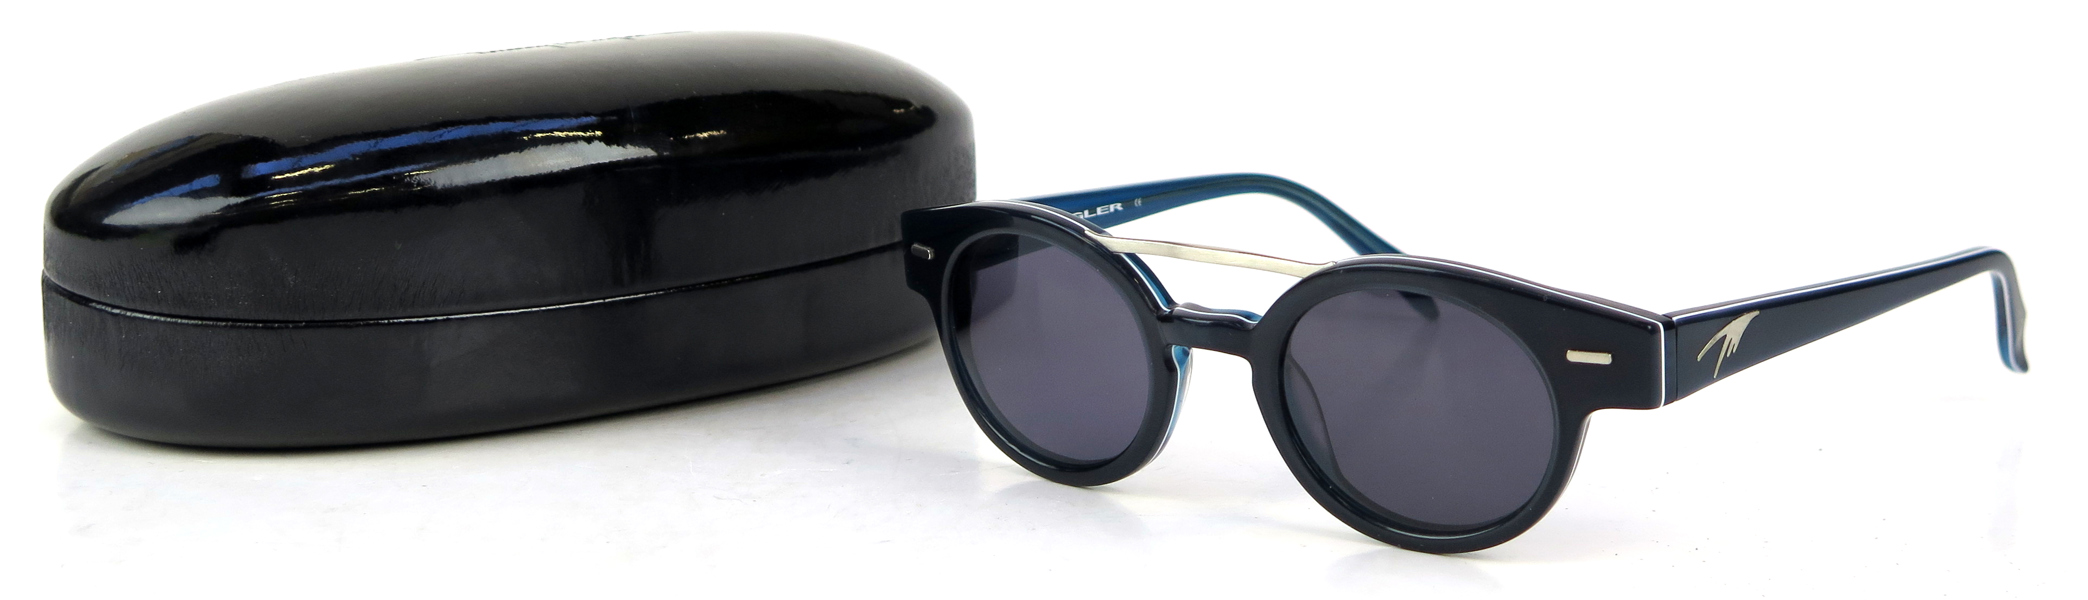 Solglasögon, 1 par, i etui, Thierry Mugler, TM 10190 C1, oanvända i originalförpackning_28055a_8db47495e1c459b_lg.jpeg